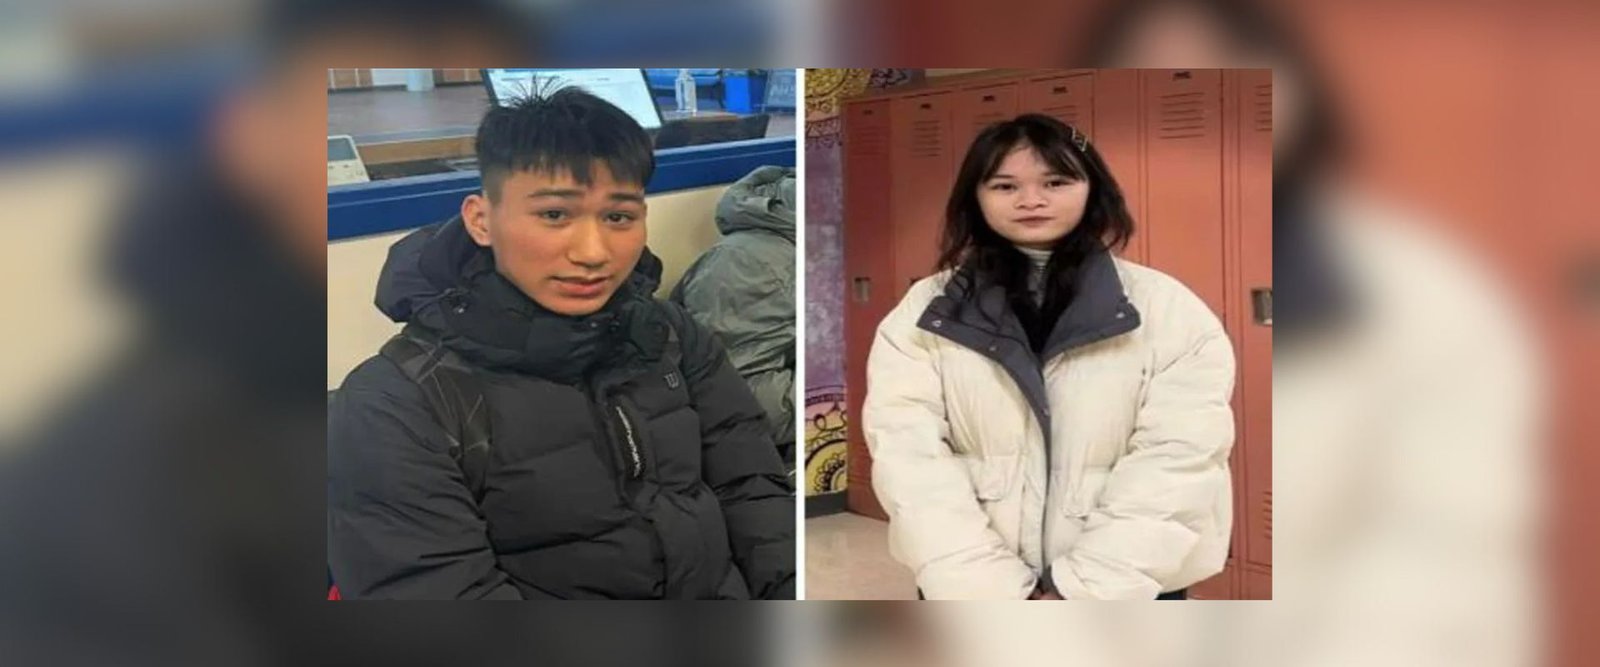 Estudantes de Taiwan estão desaparecidos em Boston